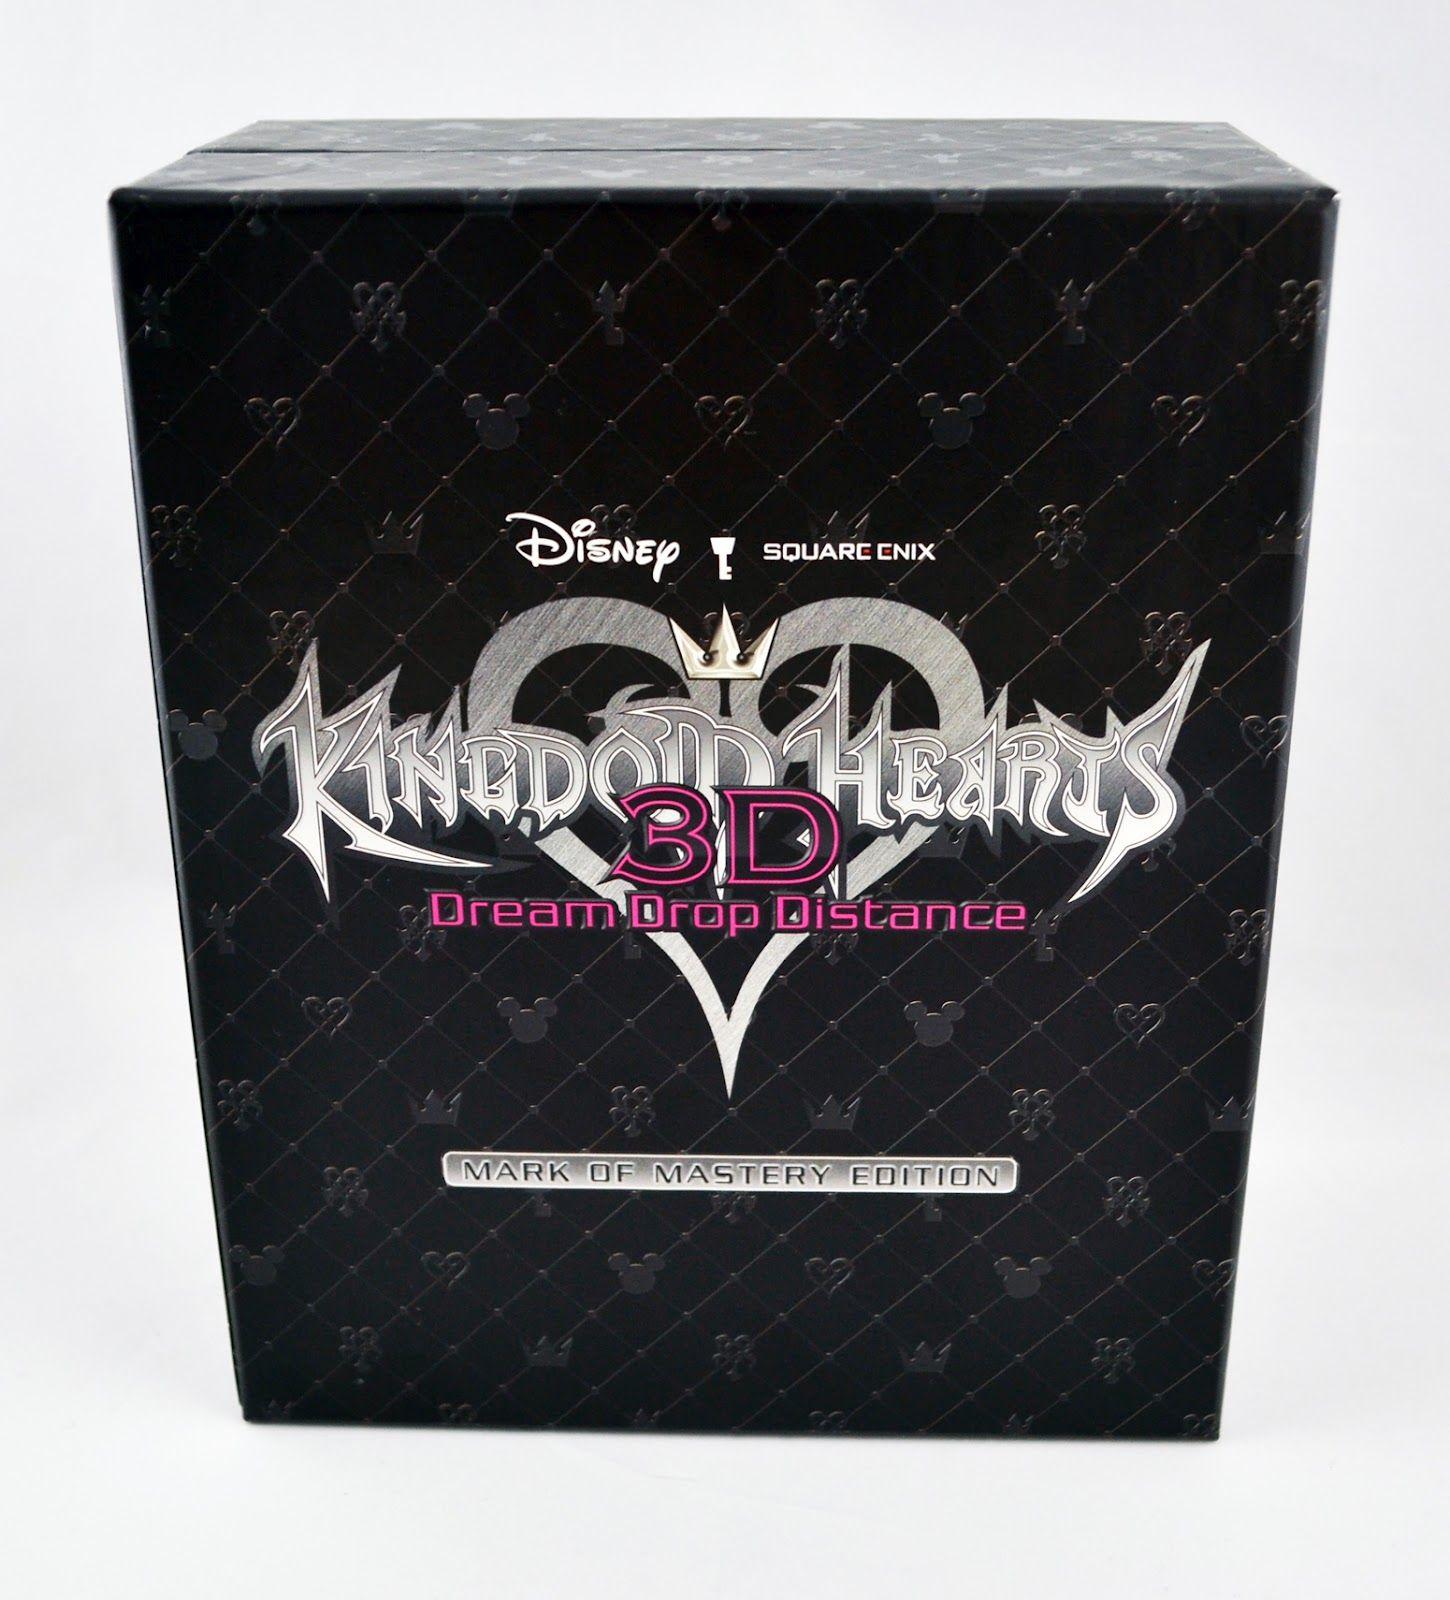 Dream Drop Logo - The D Pad: Kingdom Hearts 3D [Dream Drop Distance] of Mastery